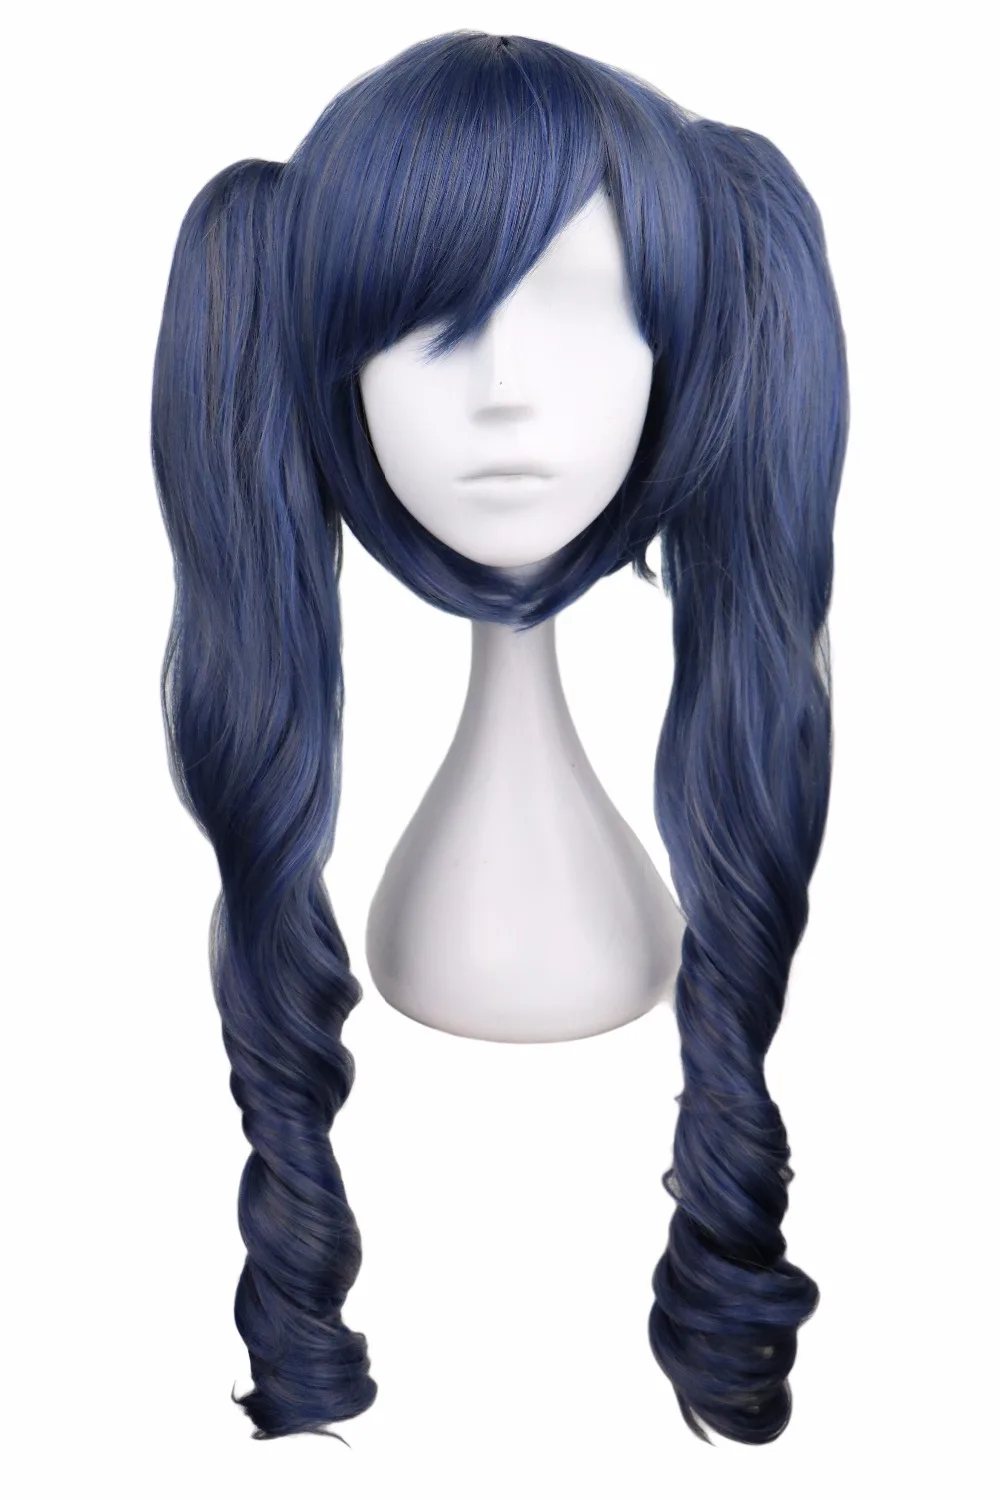 QQXCAIW-Peluca de cabello sintético para Cosplay, cabellera larga ondulada de color negro, Butler mezclado azul, gris y gris de 70 Cm